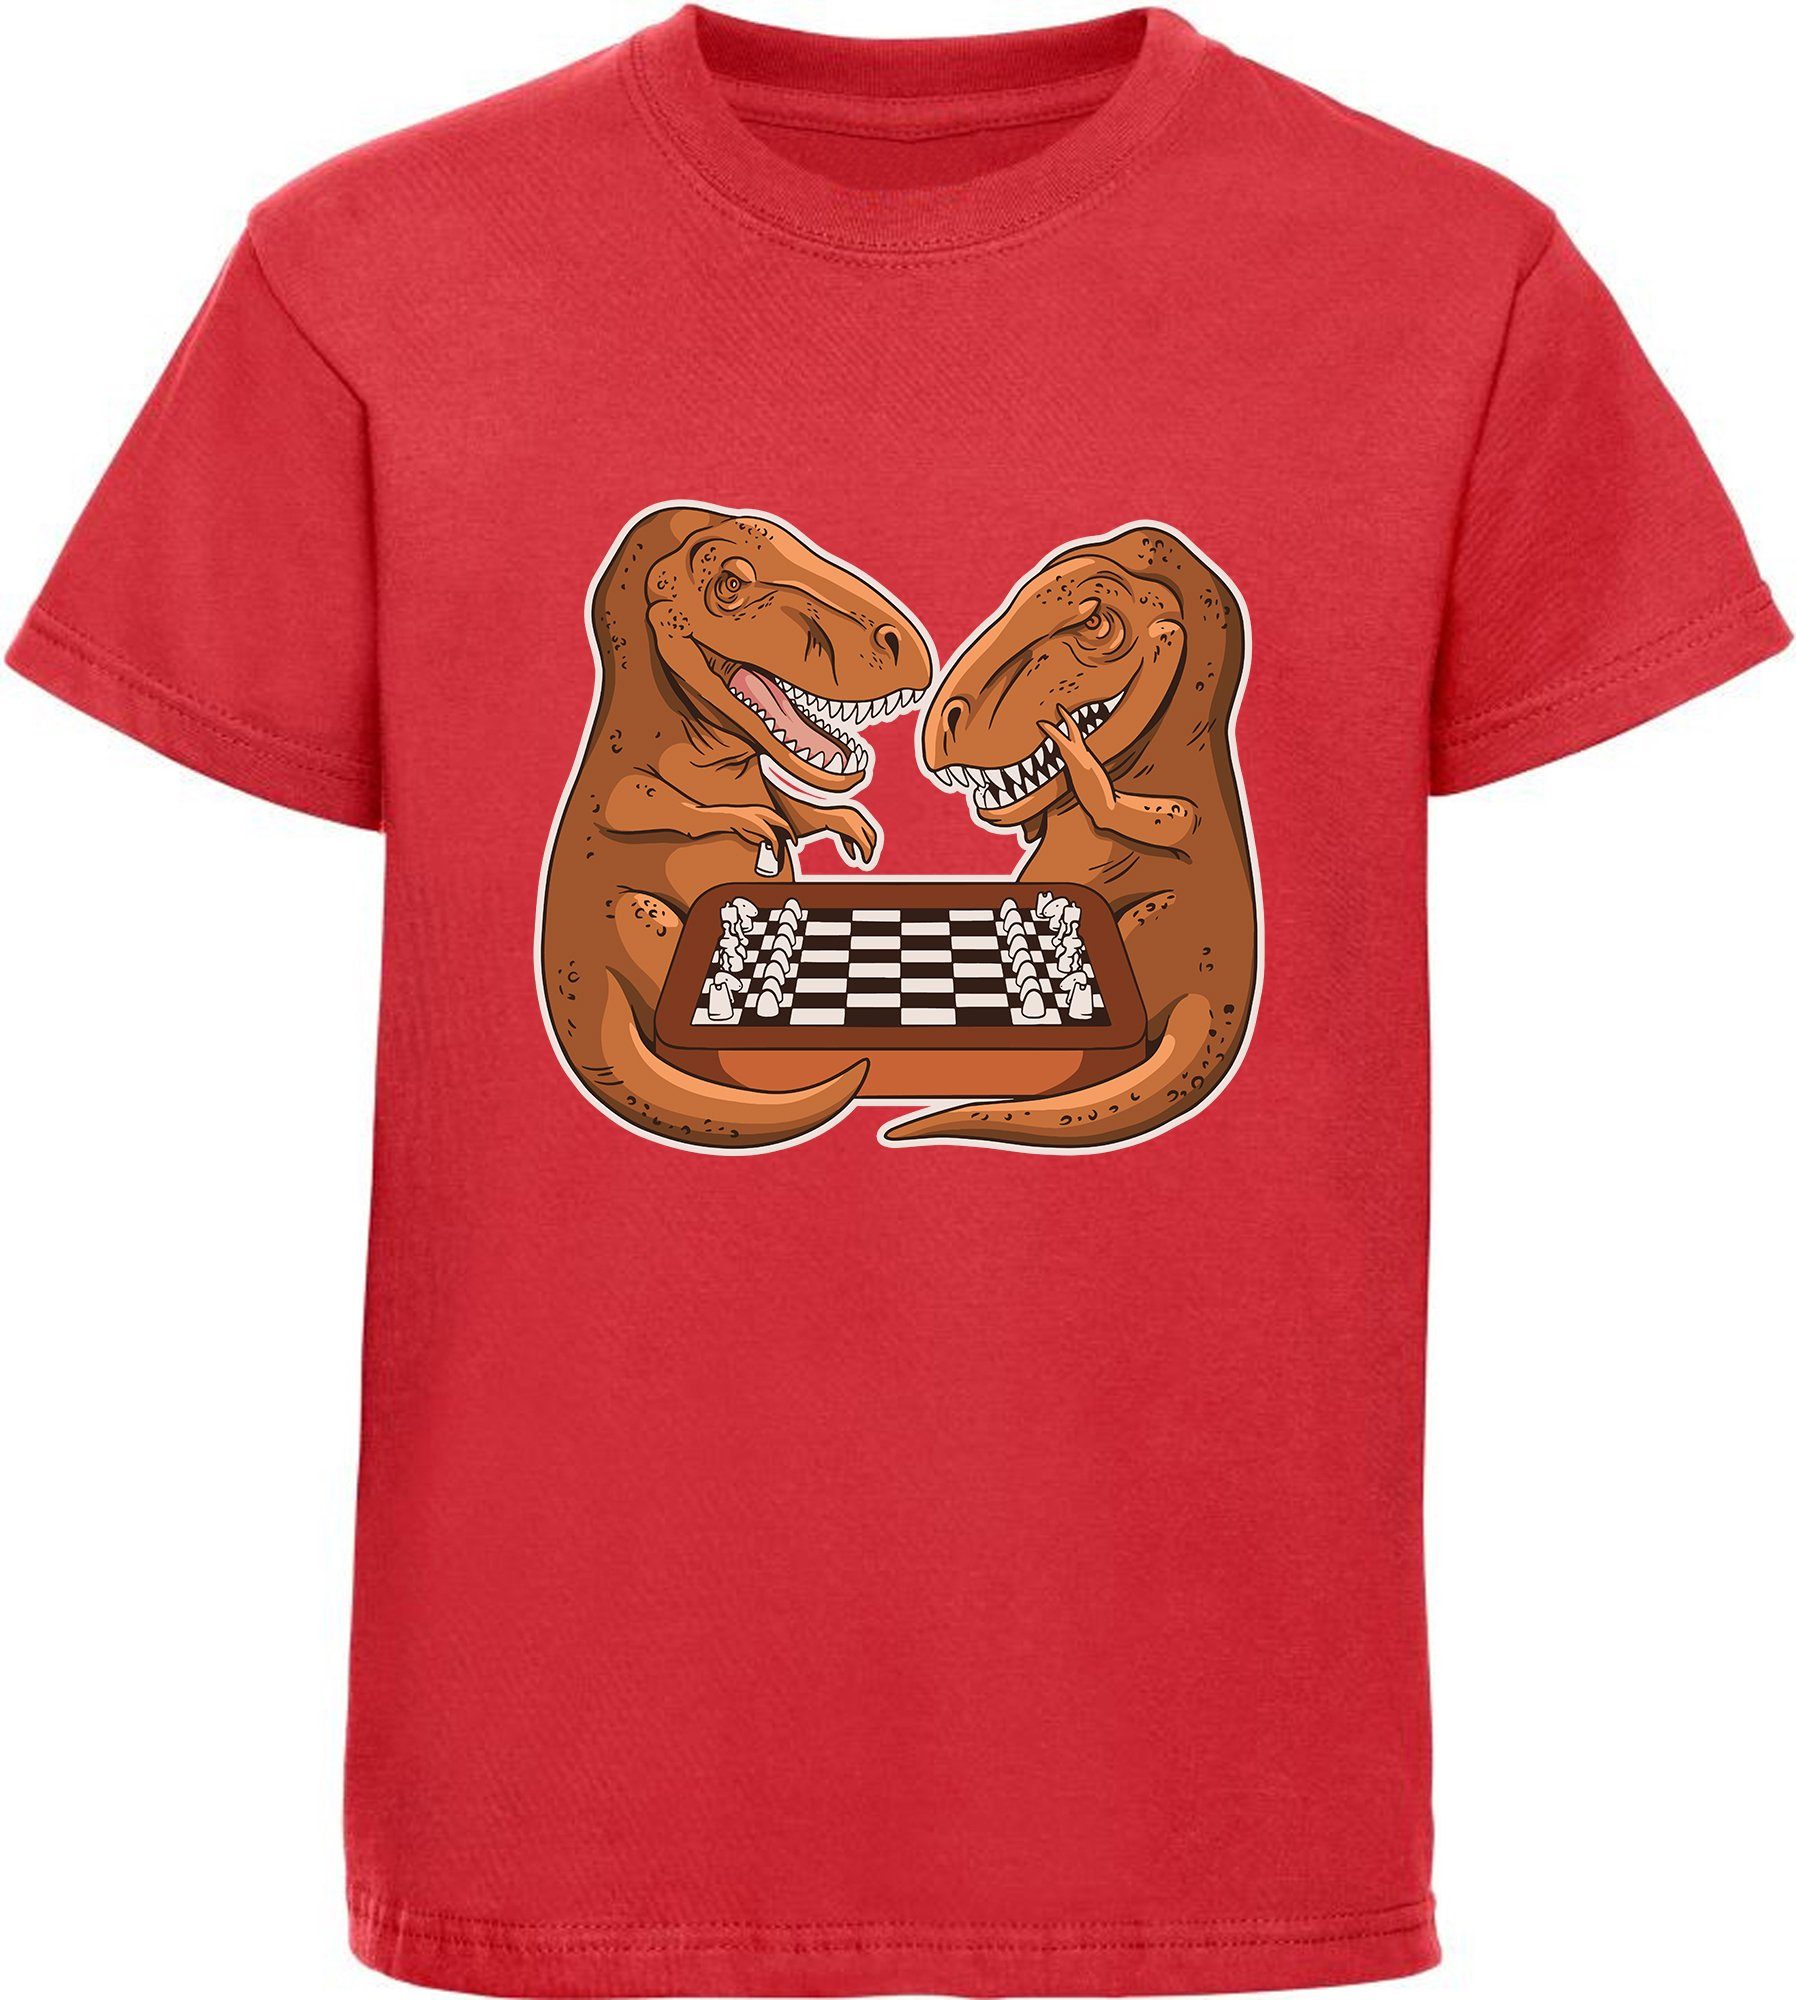 MyDesign24 Print-Shirt bedrucktes Kinder T-Shirt mit T-Rex beim Schach Baumwollshirt mit Dino, schwarz, weiß, rot, blau, i67